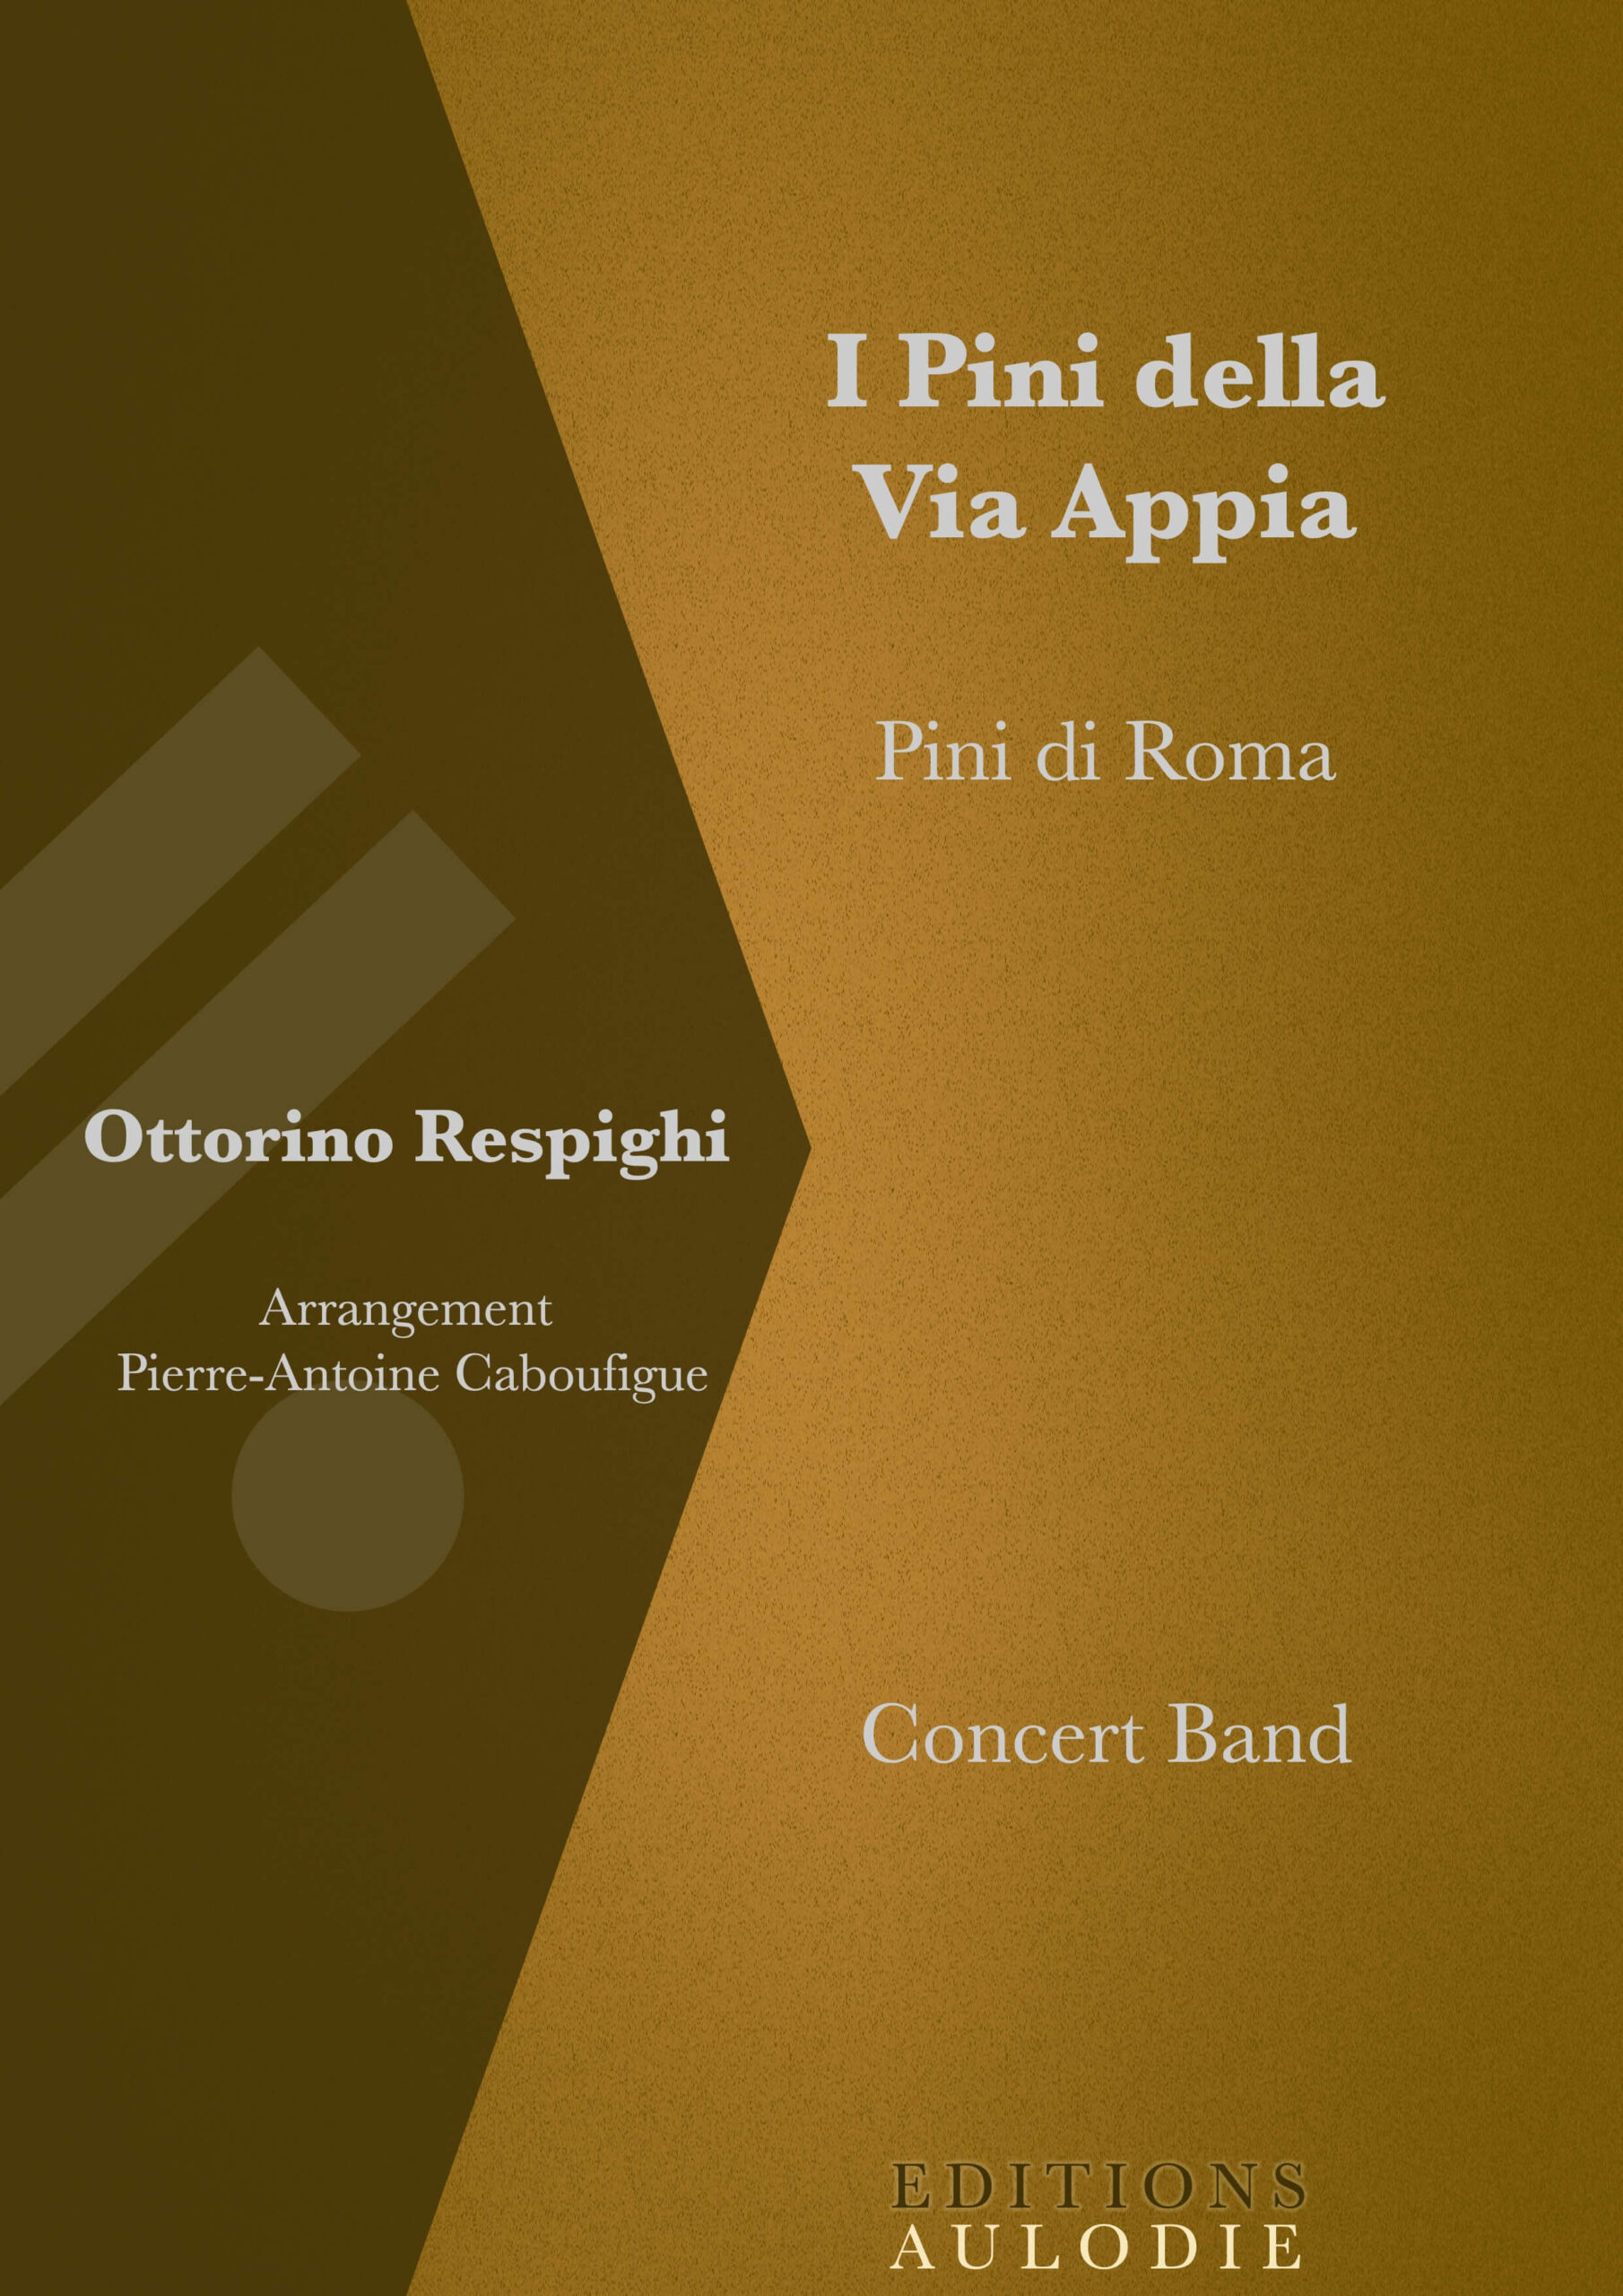 EA01002-I_Pini_della_Via_Appia-Pini_di_Roma-Ottorino_Respighi-Concert_Band